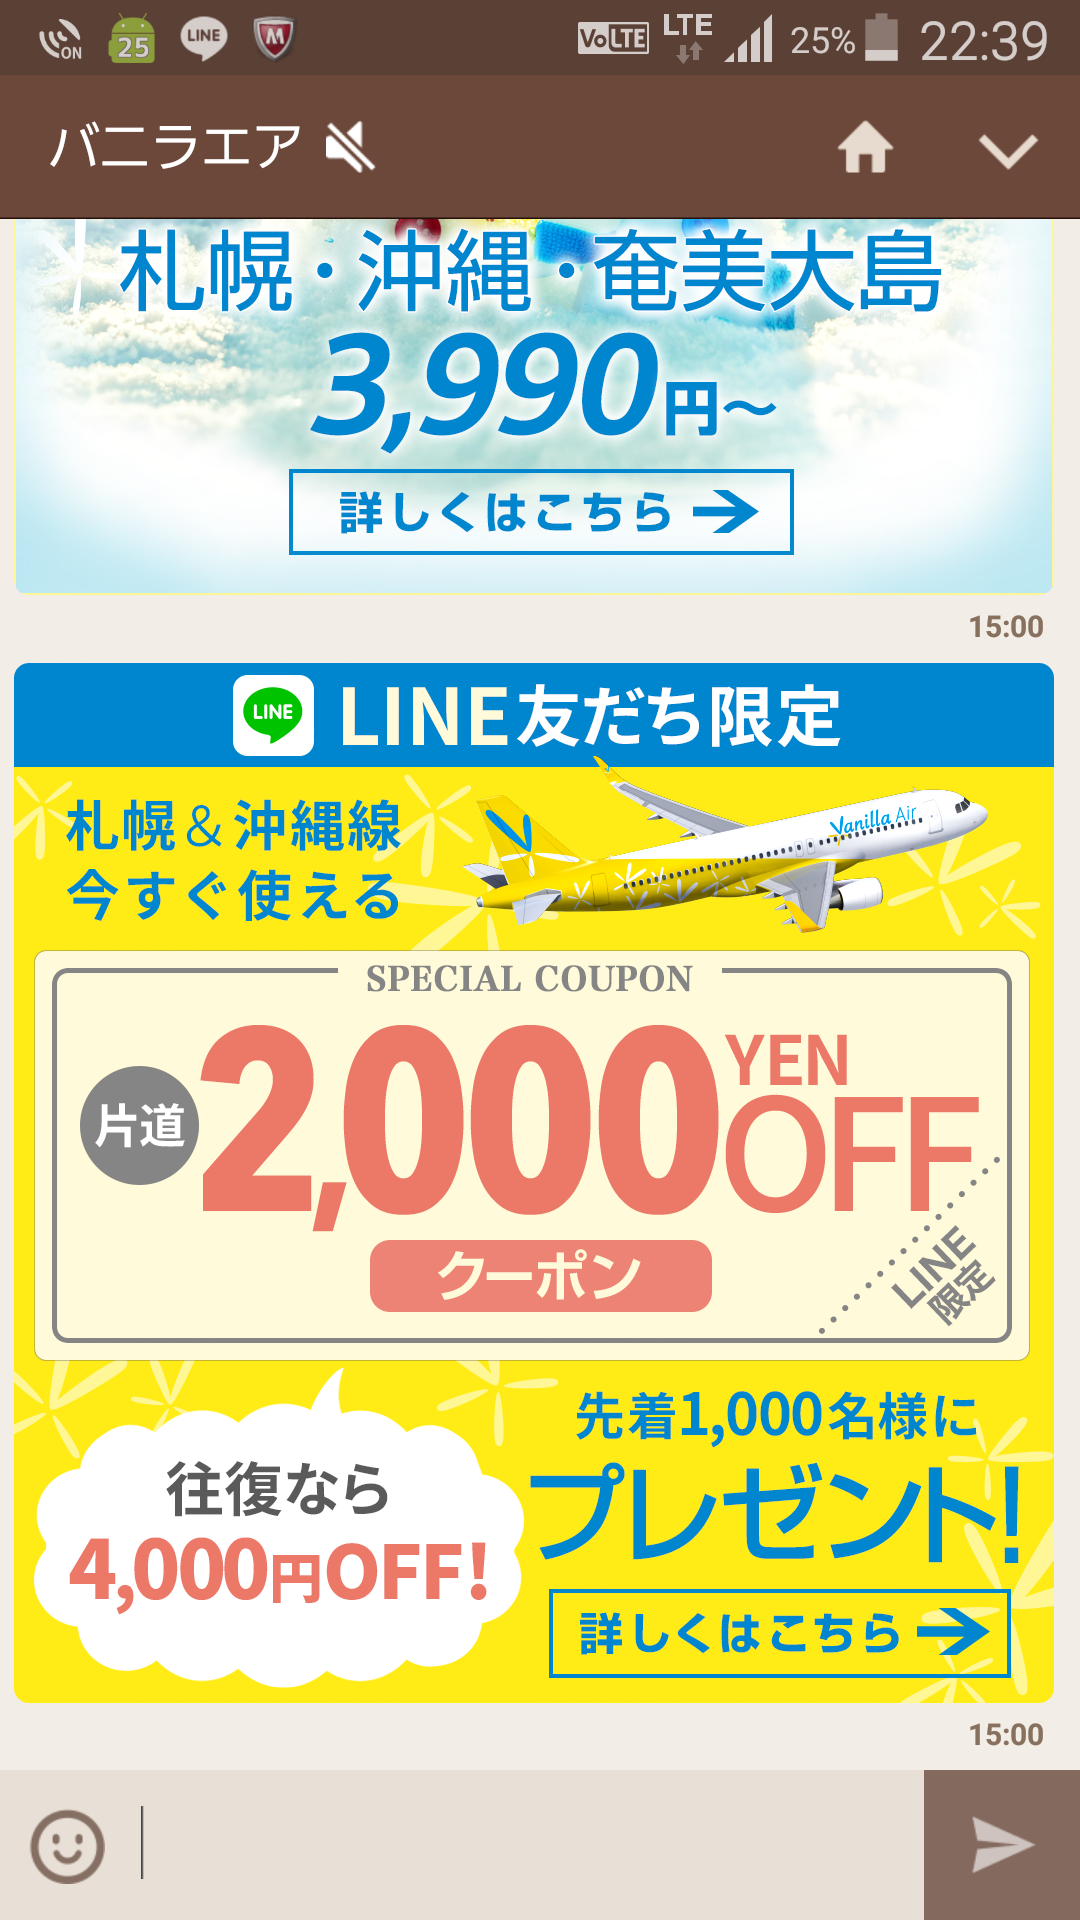 バニラエア Line公式アカウントの友達先着1 000名限定で片道が2 000円offになるクーポンを配布 Gucchi23 Blog